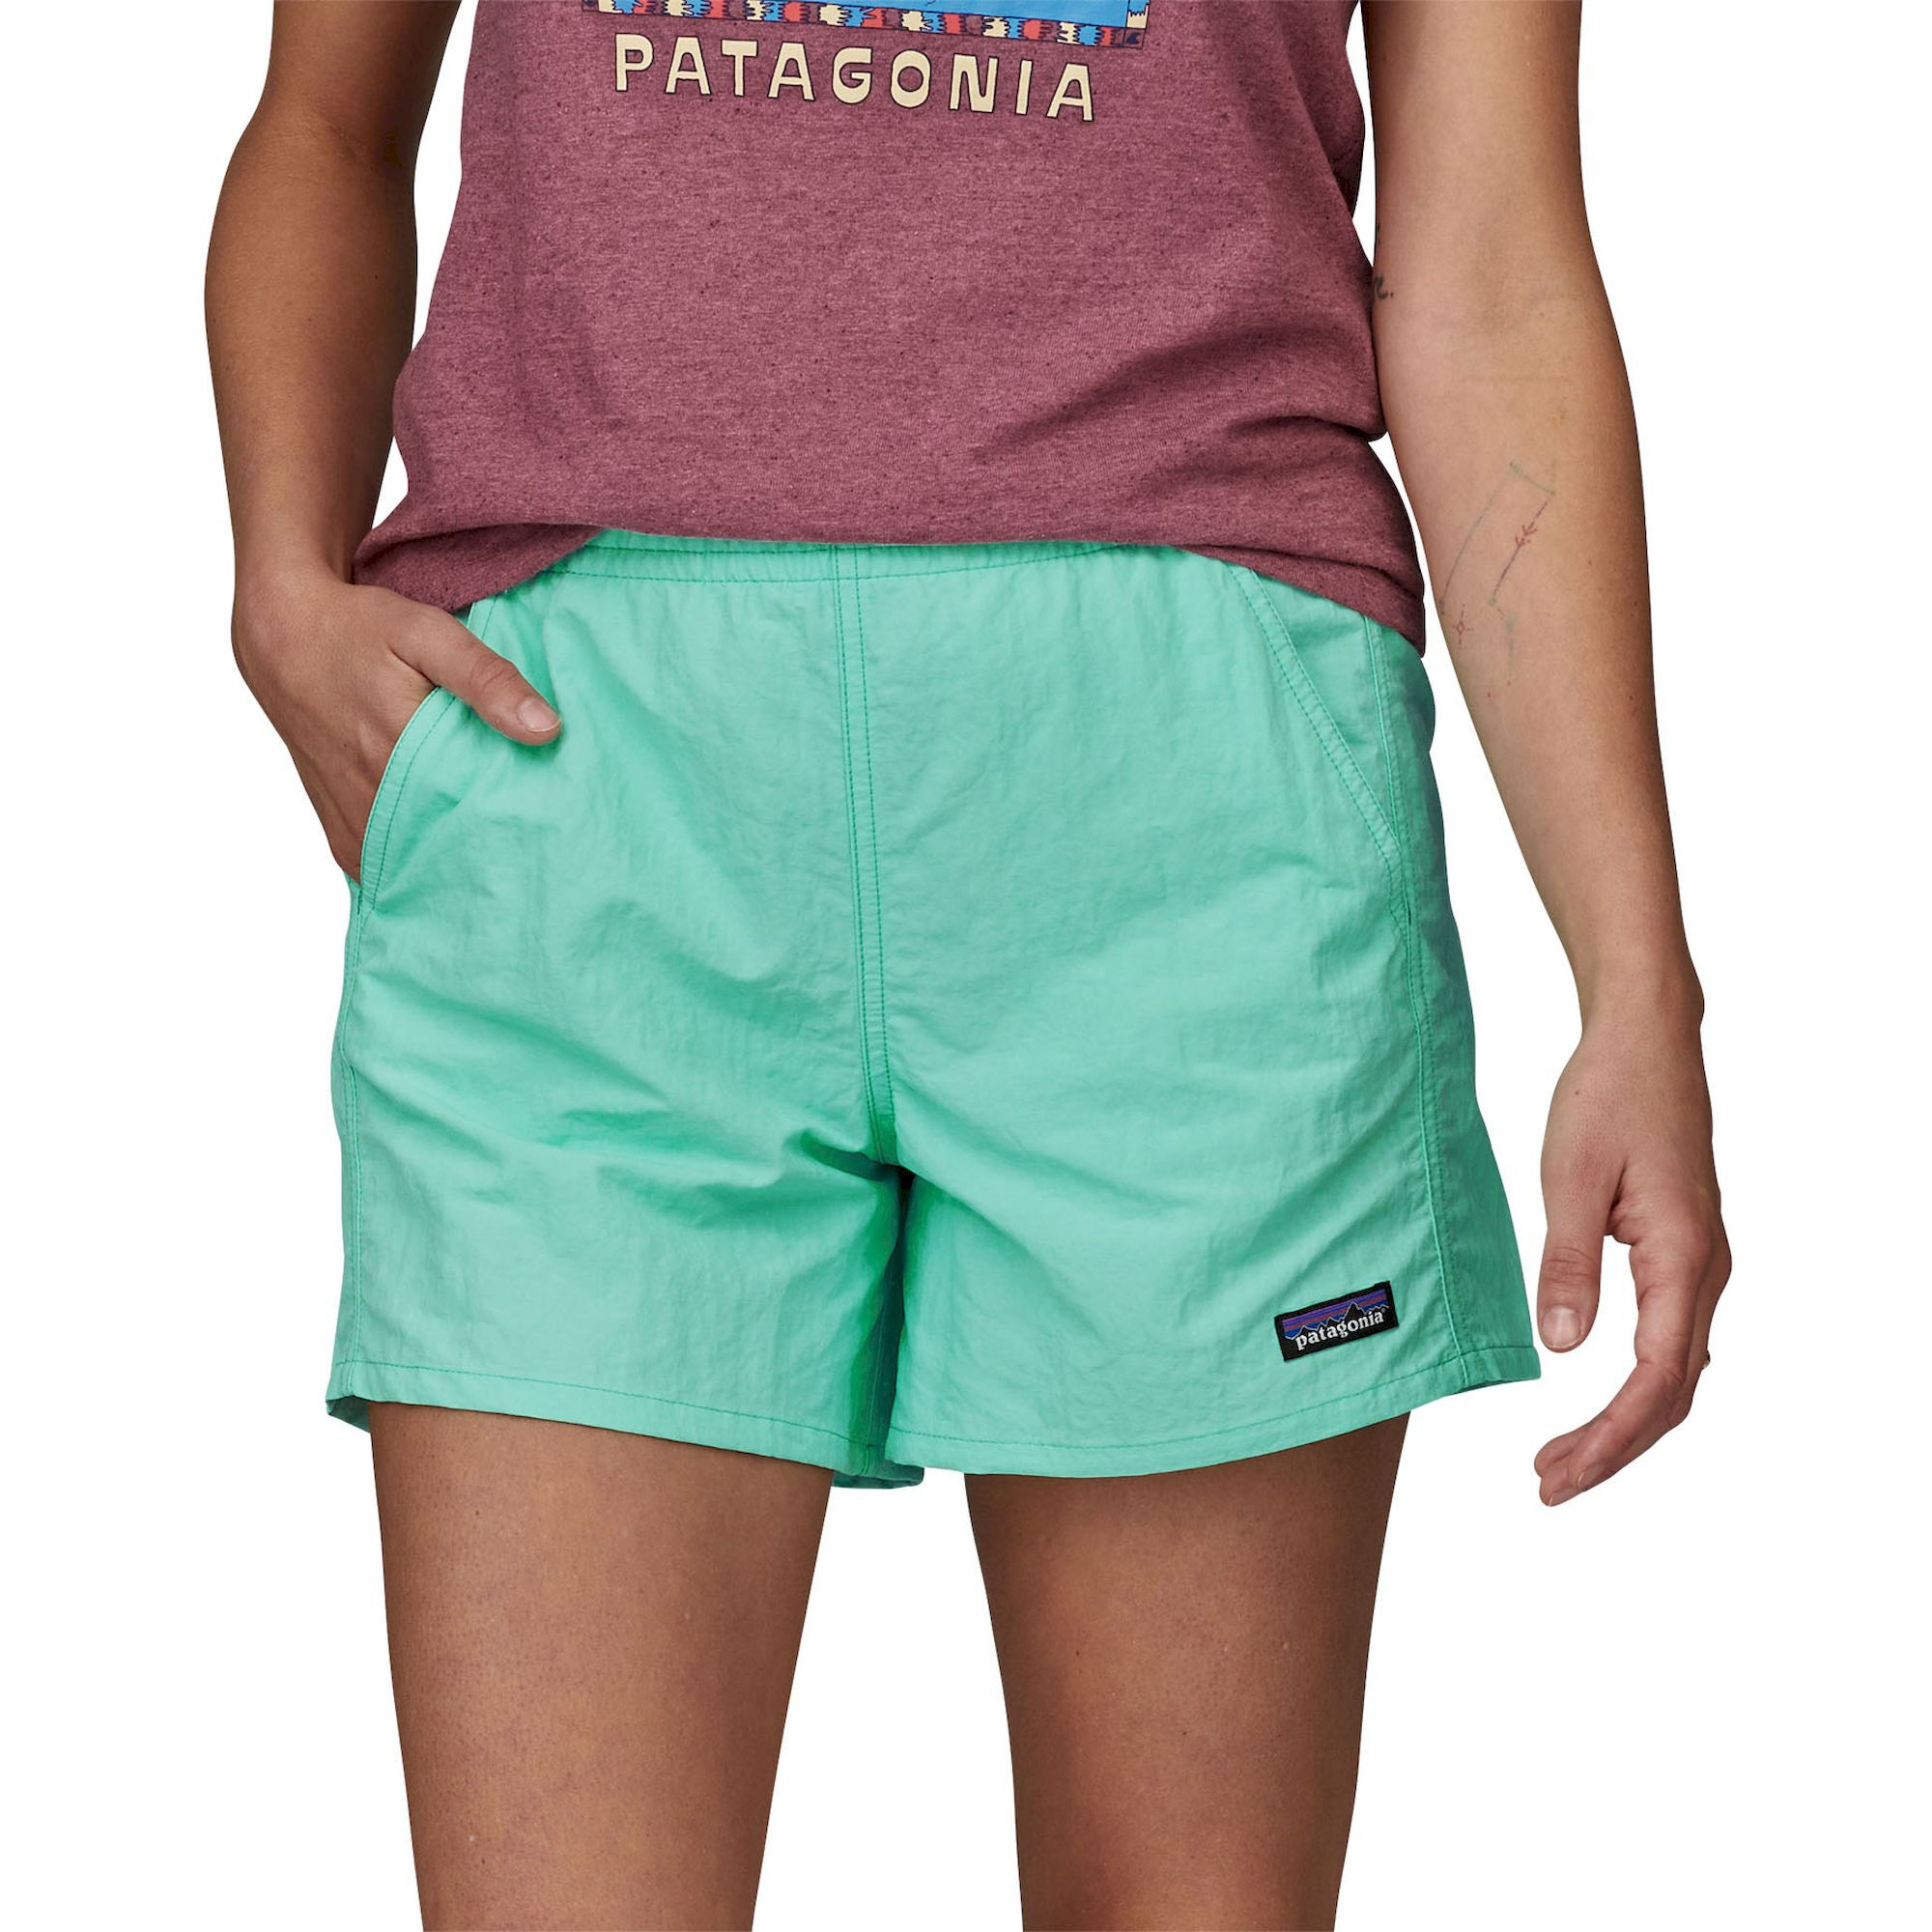 Patagonia Baggies Shorts 5 in. - Shorts - Damen